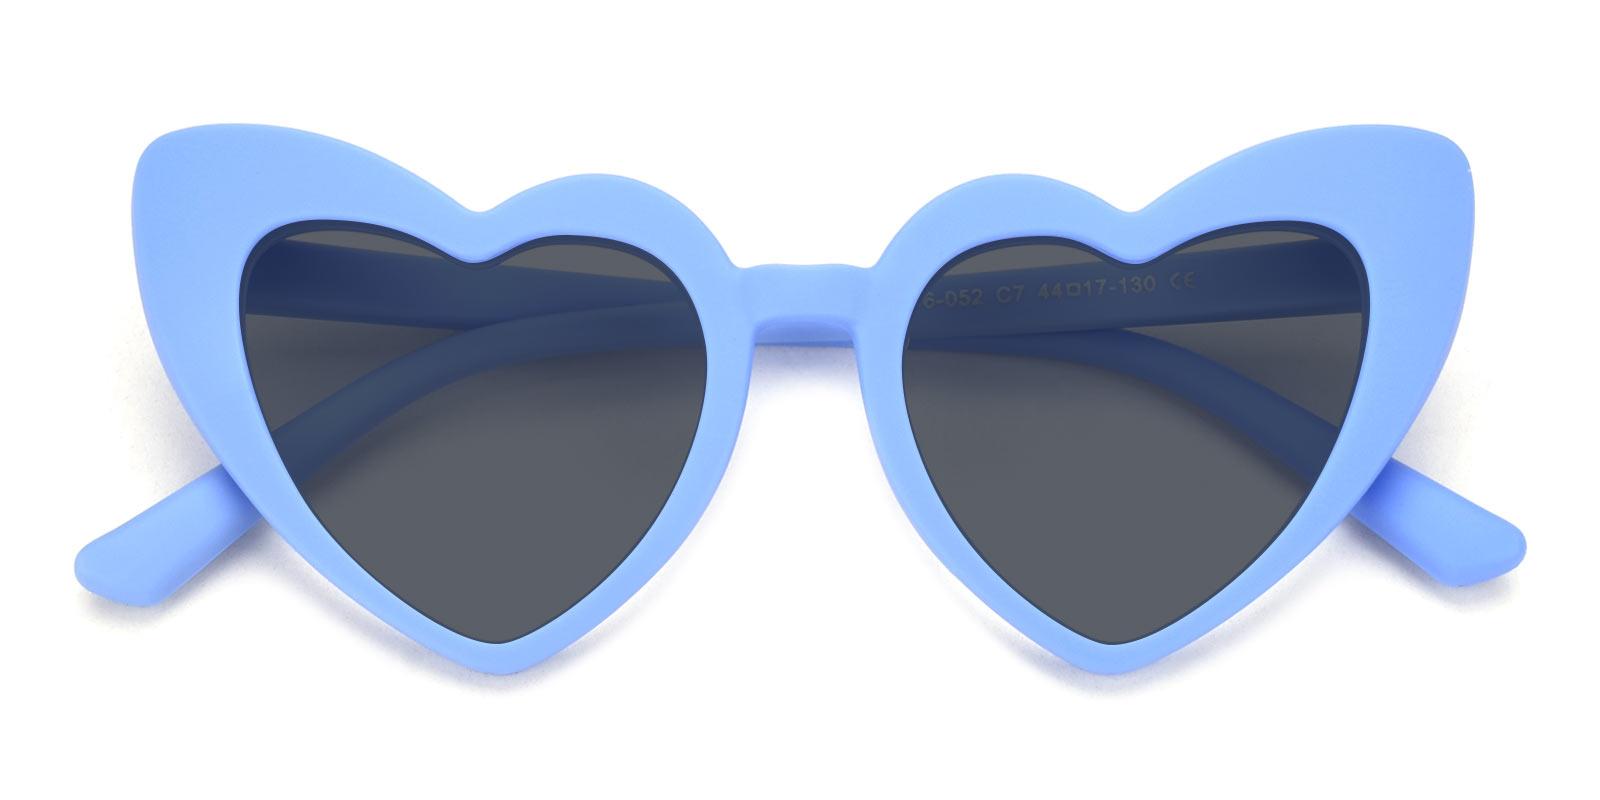 Retta Non Prescription Sunglasses-Blue-Geometric-TR-Sunglasses-detail